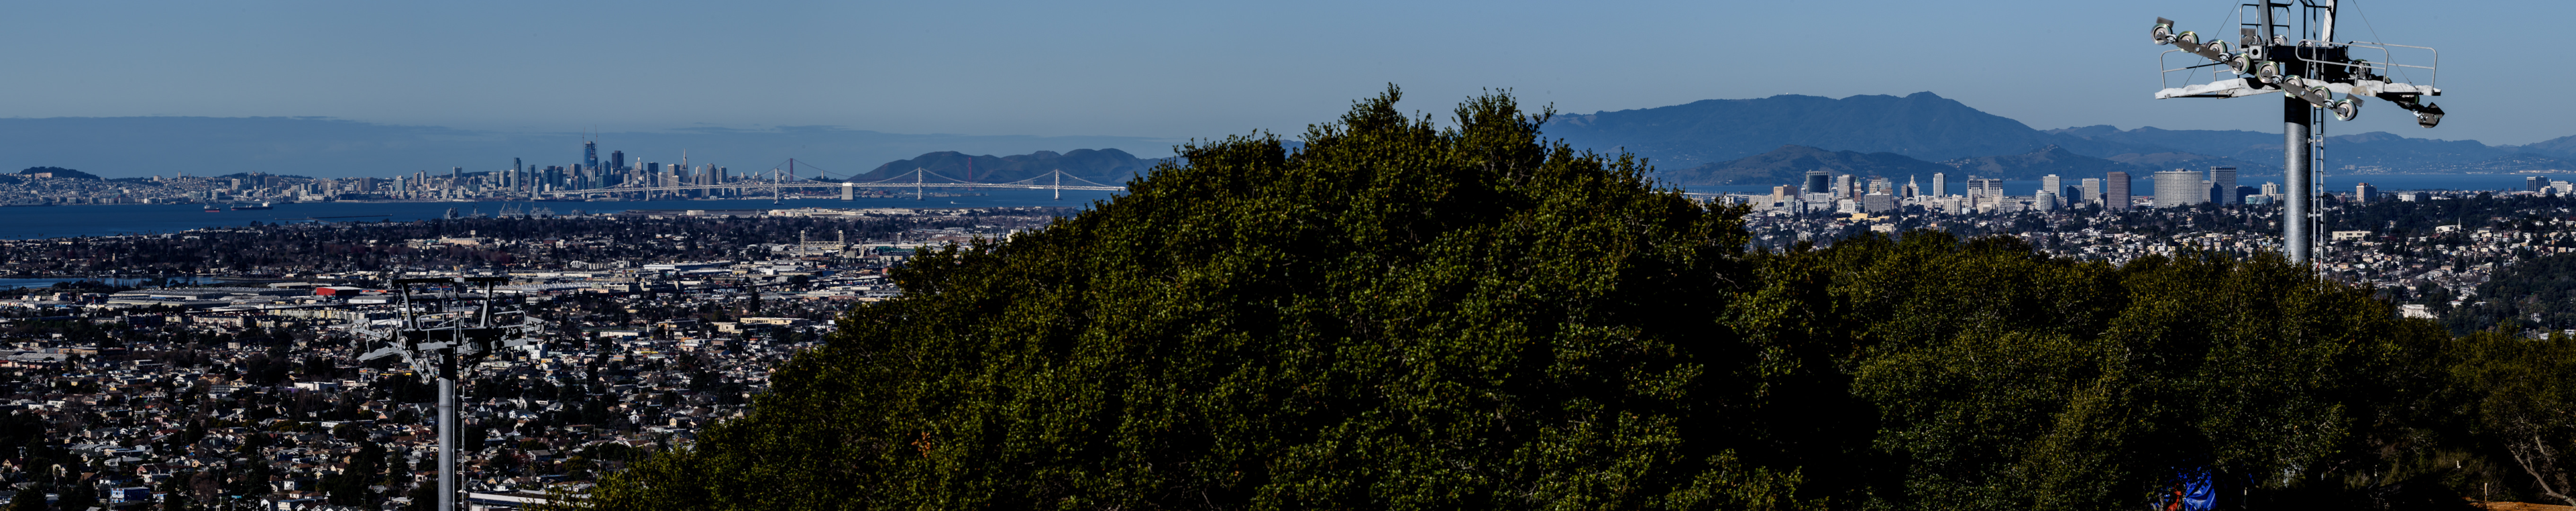 Bison Overlooks utsikt over Oakland by, Bay Bridge og San Francisco i bakgrunnen